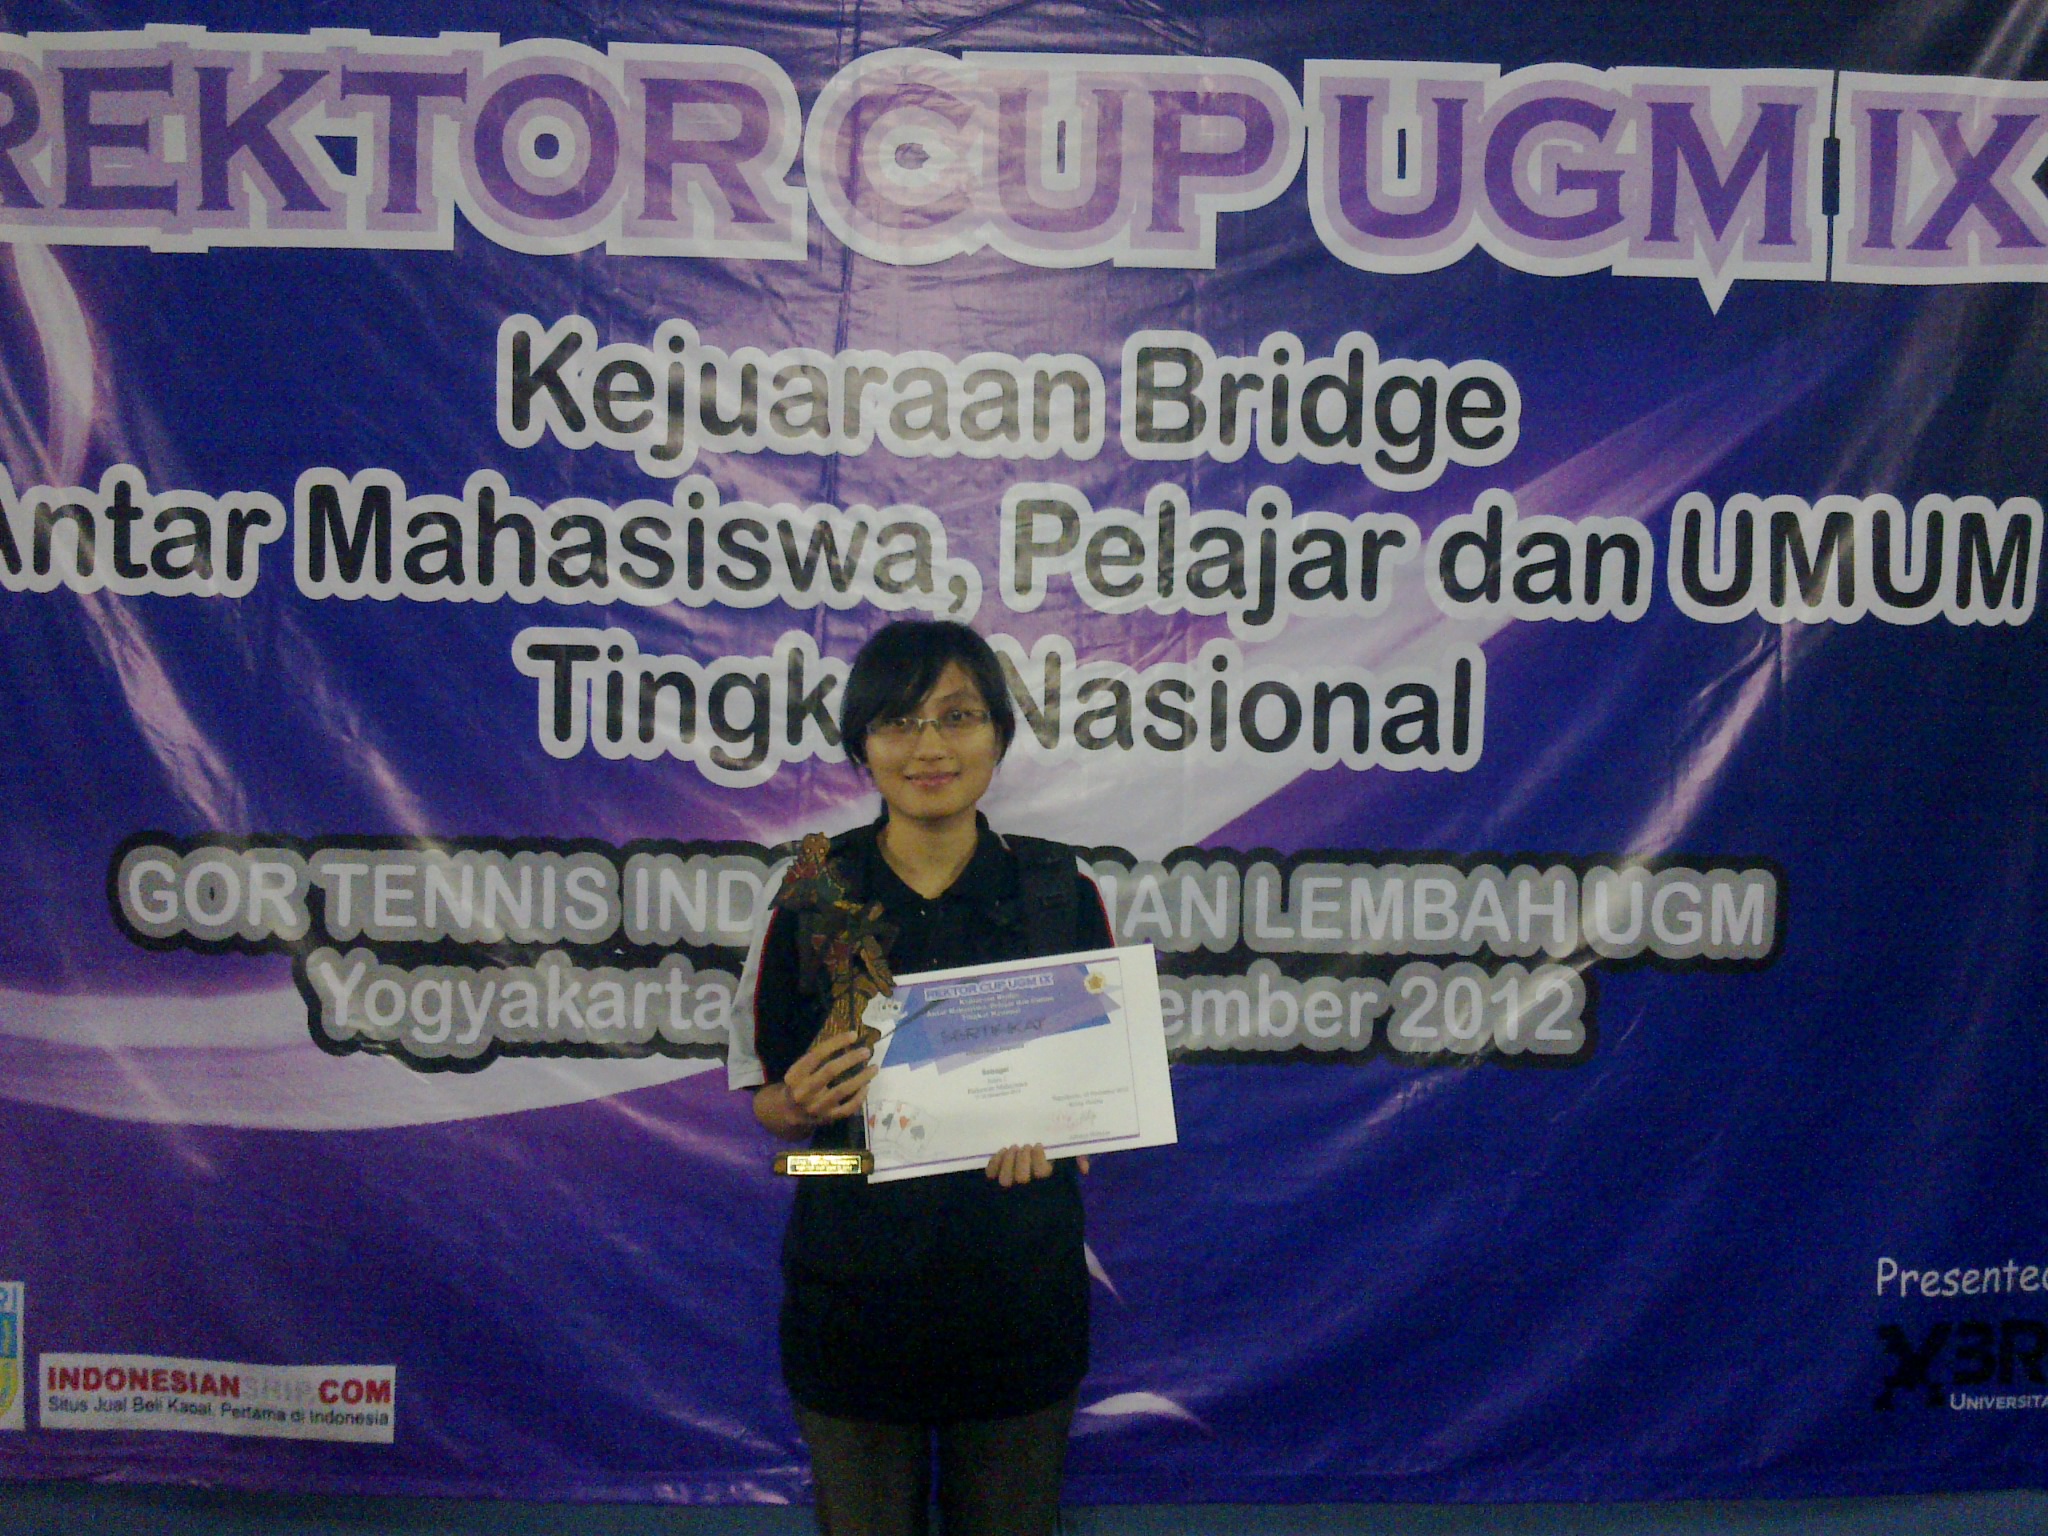 Foto Kejuaraan Bridge antar Mahasiswa Tingkat Nasional kategori patkawan mahasiswa dalam rangka REKTOR CUP UGM IX 